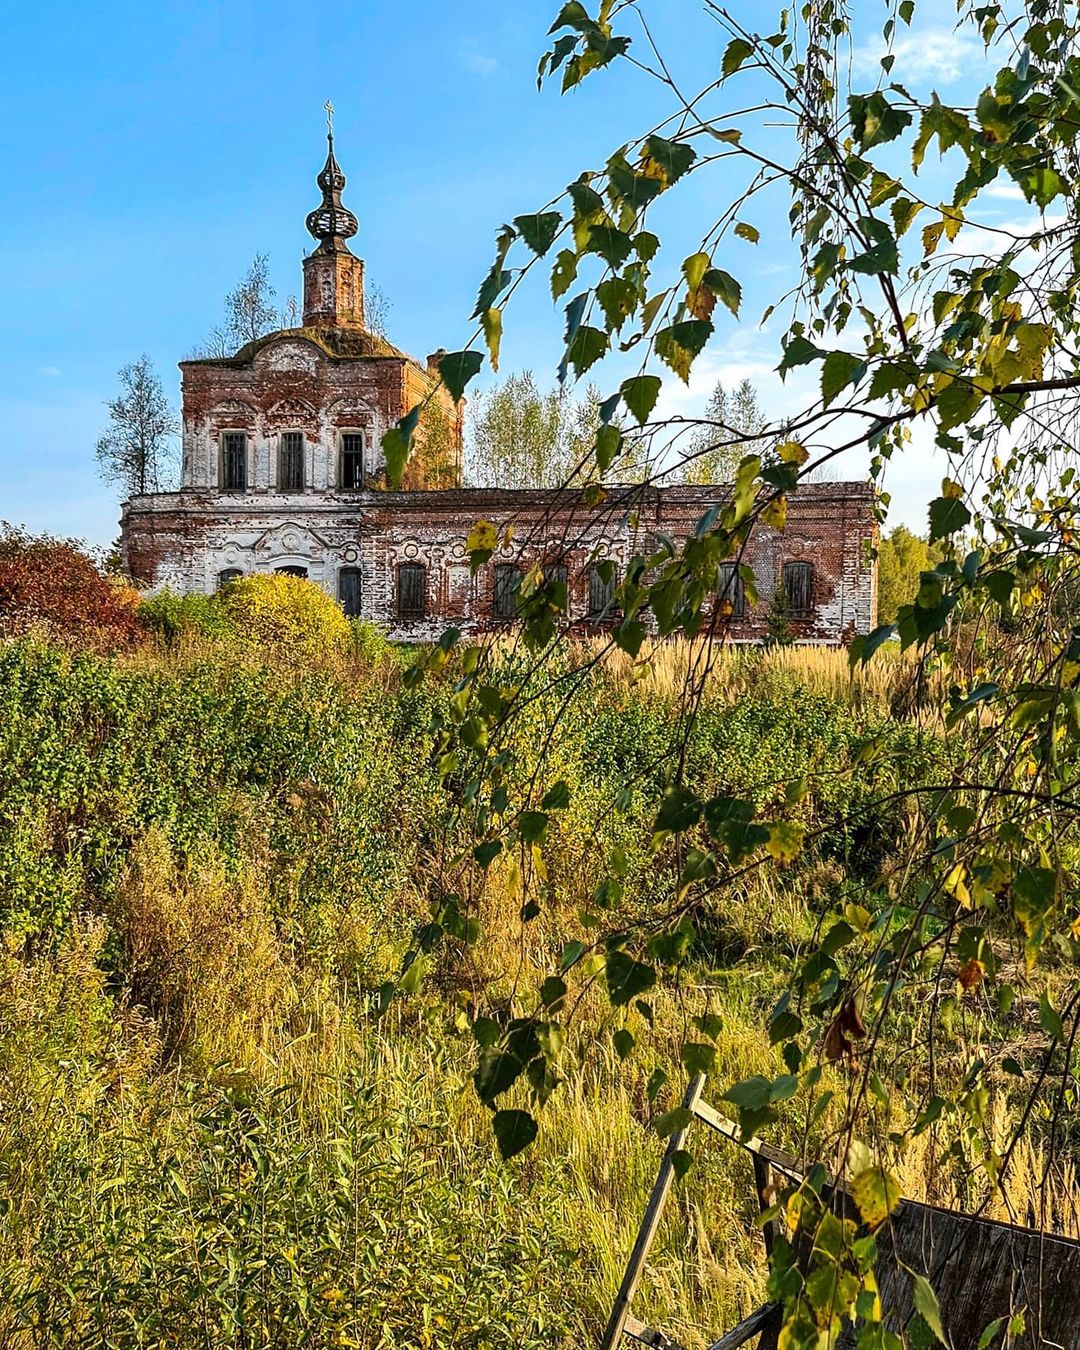 Тревел-блогер @juliaananeva поделилась кадрами из заброшенной церкви, стоящей в селе Ряхово Камешковского района. Это стоит увидеть!